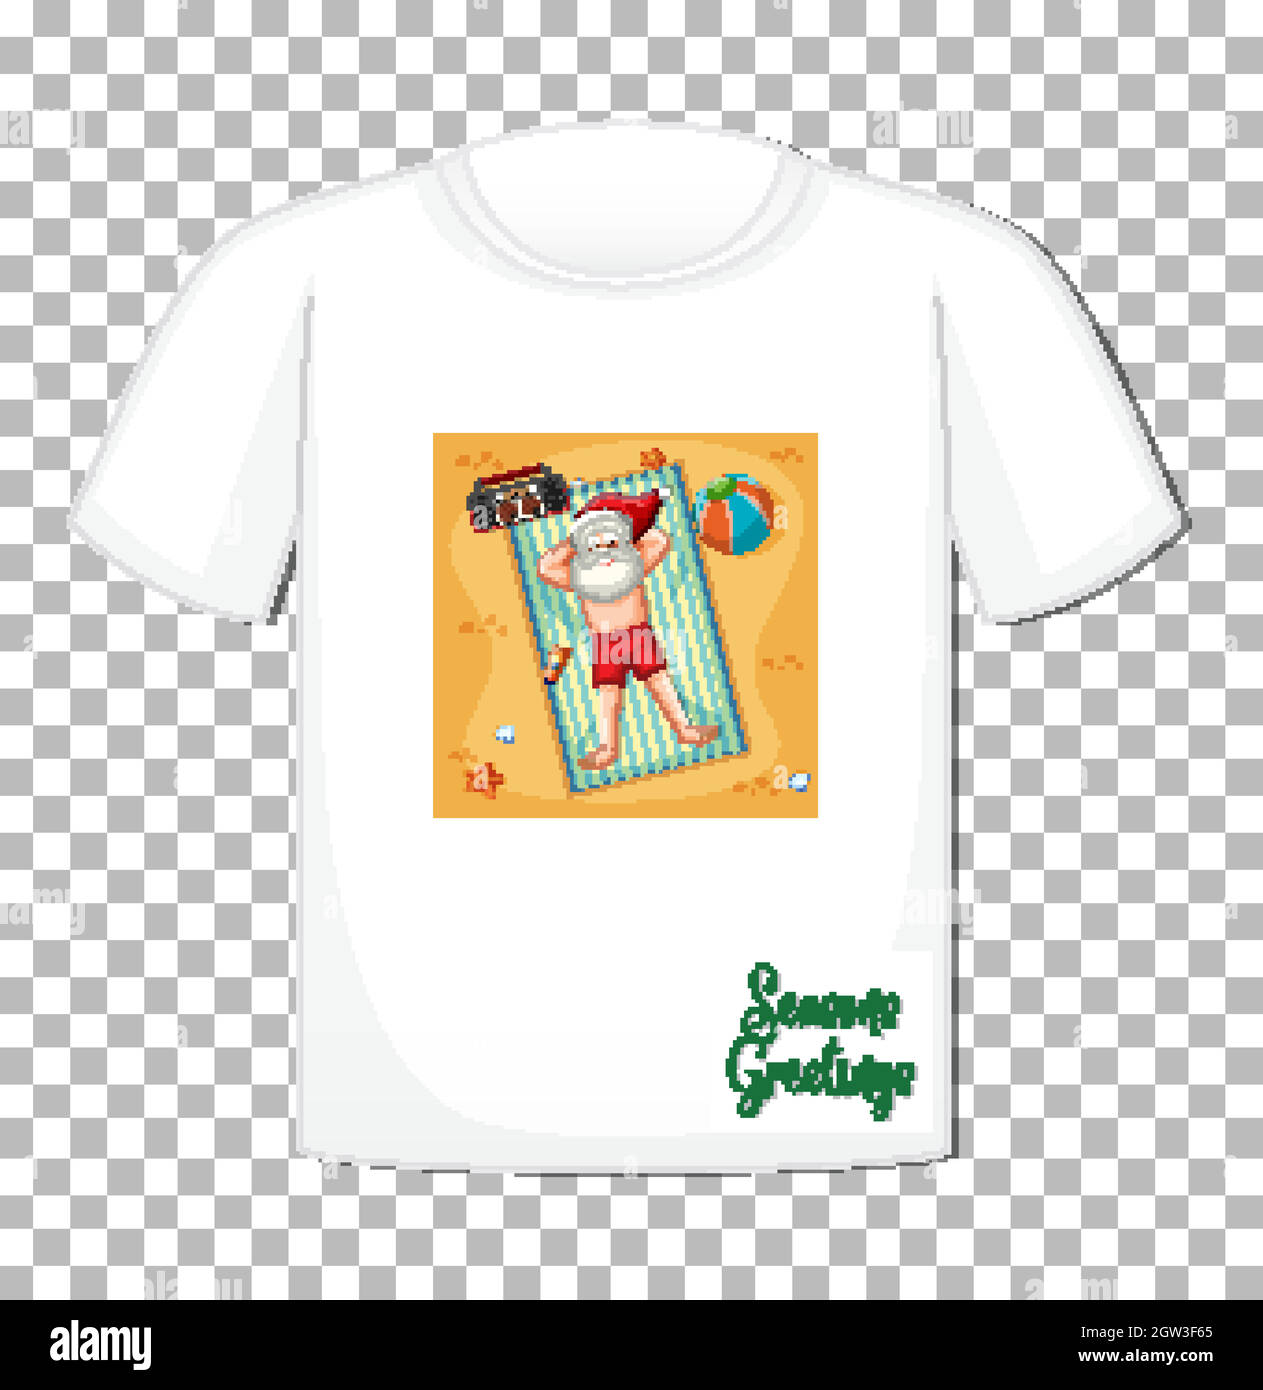 Personnage de dessin animé du Père Noël thème été sur t-shirt sur fond transparent Illustration de Vecteur